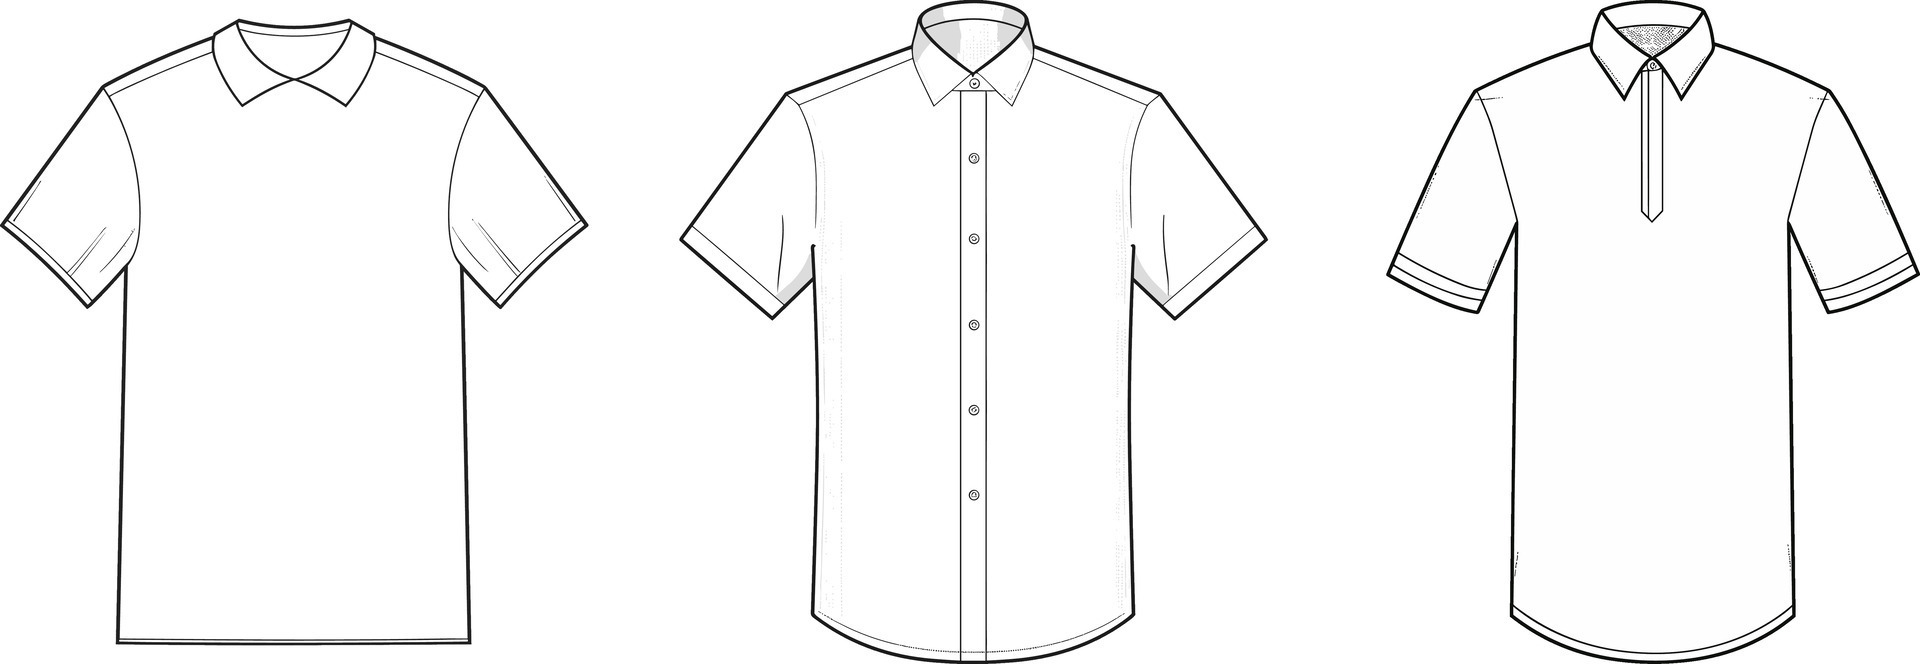 template shirt mockup, vector illustration flat design outline ...